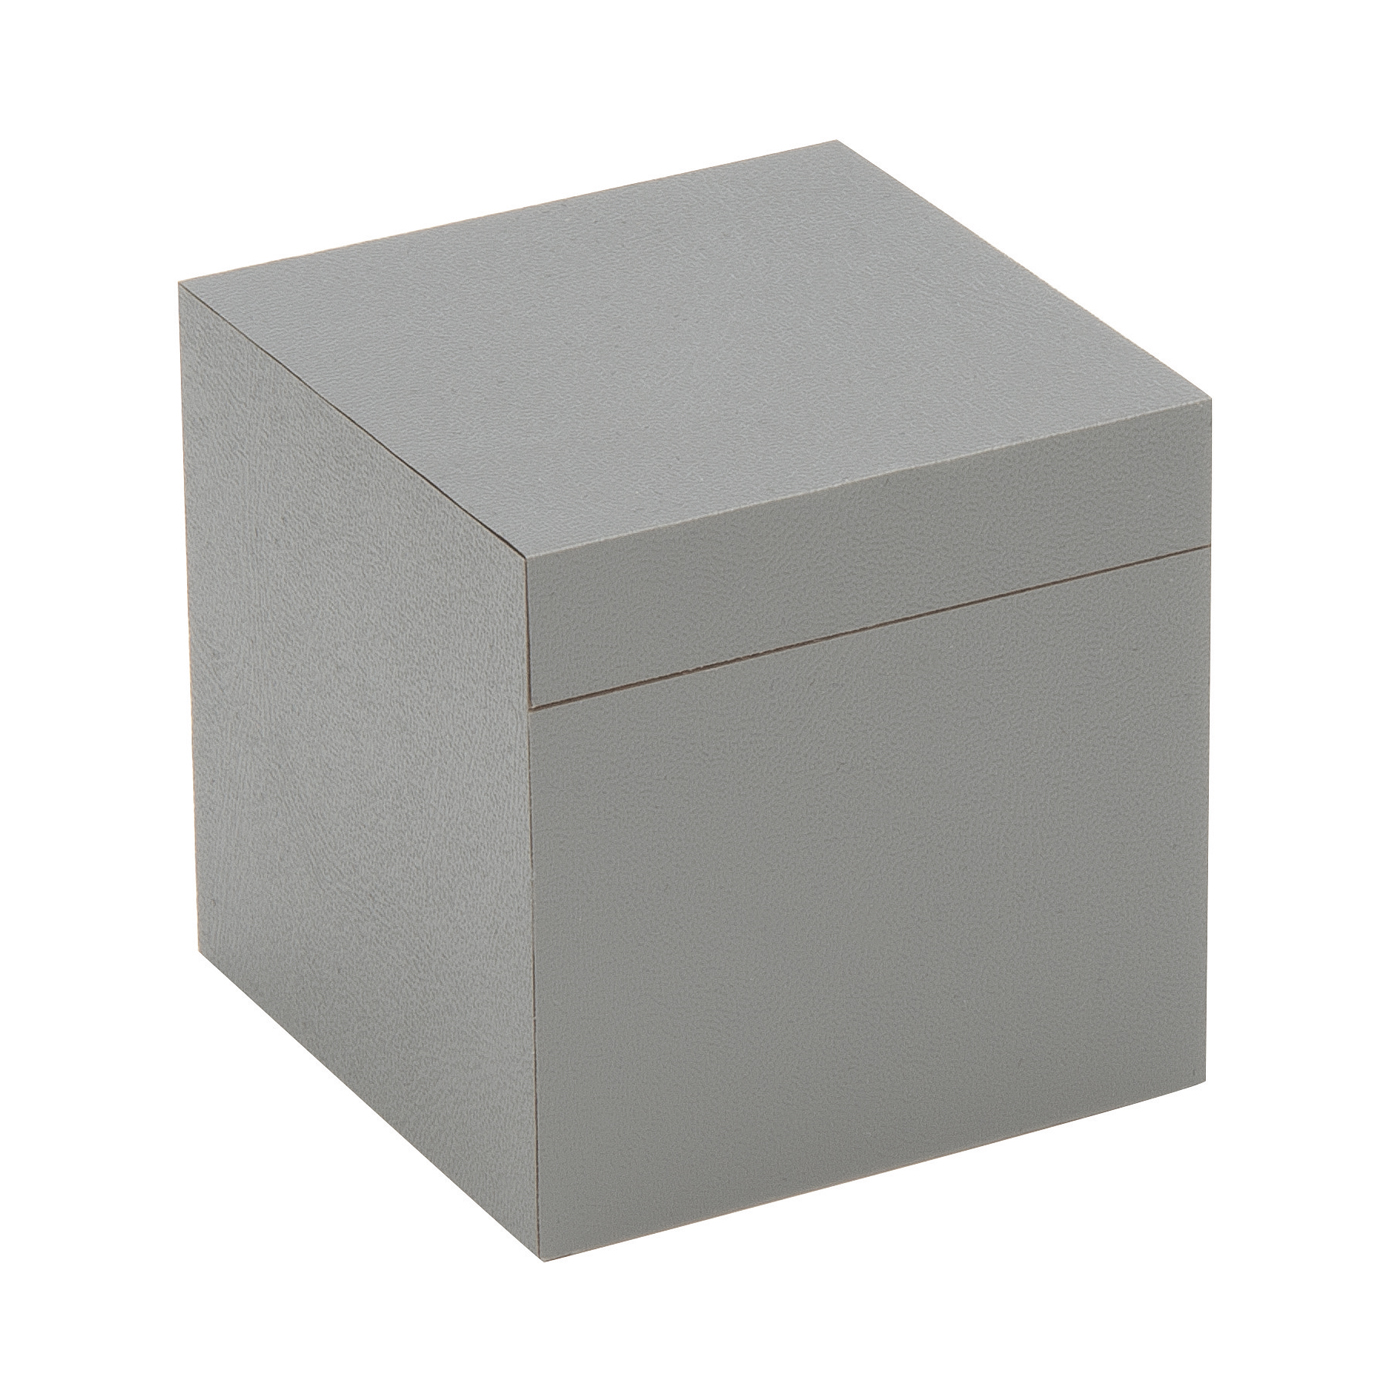 PICA-Design Schmucketui "Greybox", 37 x 37 x 37 mm - 1 Stück